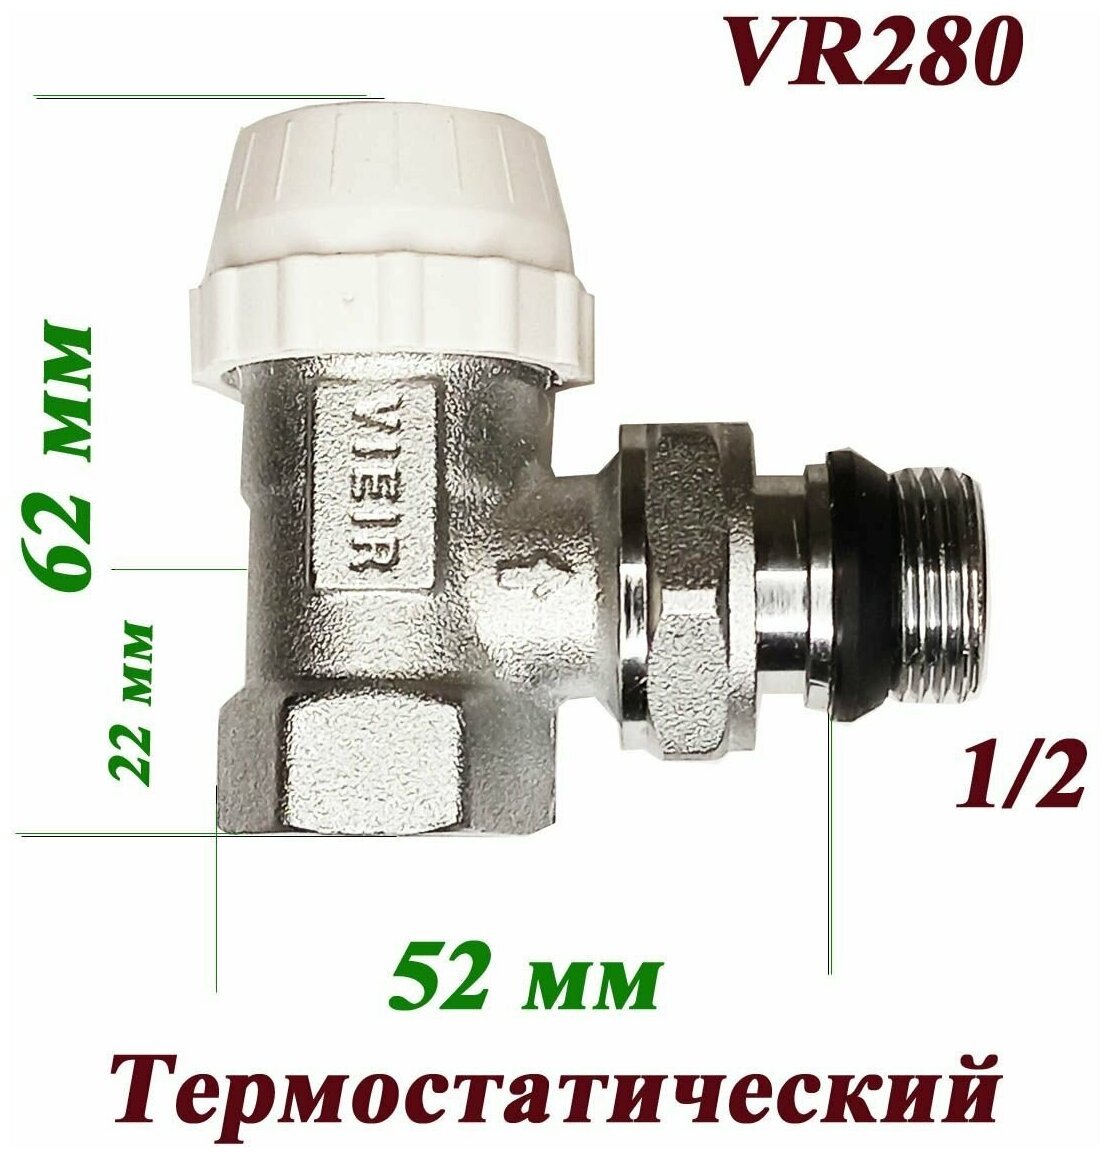 Вентиль термостатический угловой верхний VR280 Vieir 1/2"/ для радиатора отопления